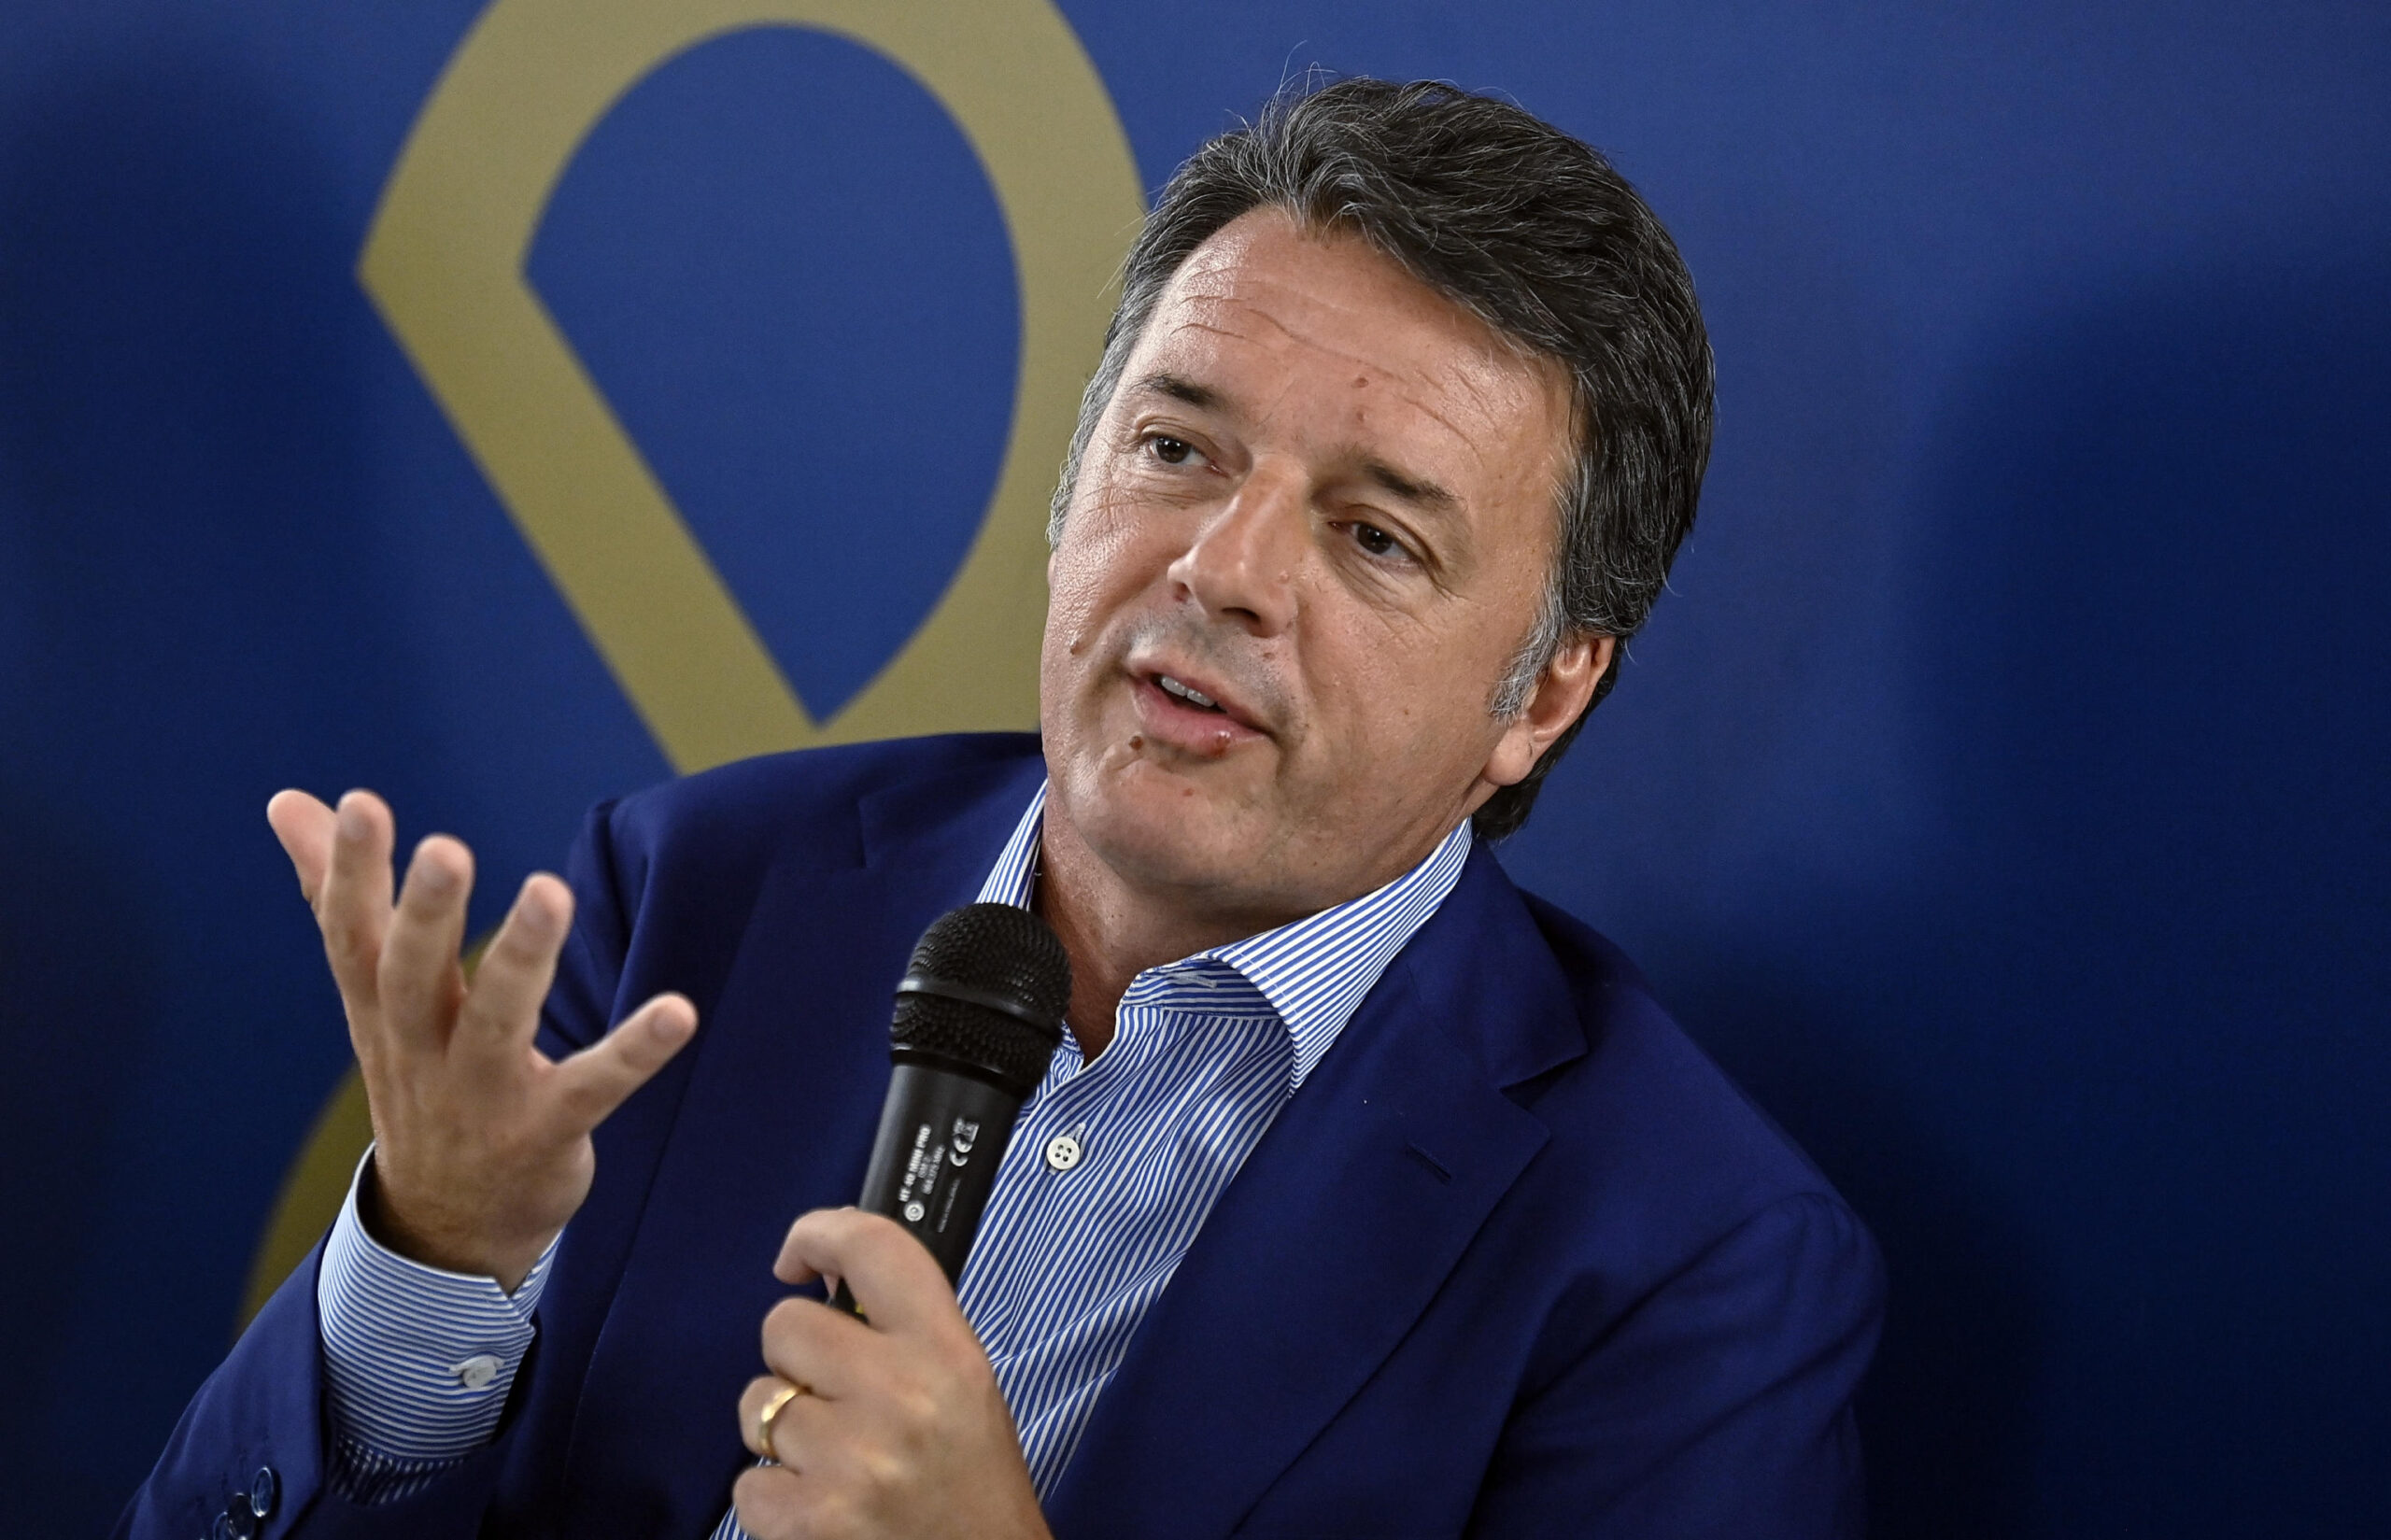 Basilicata, Renzi esulta con la destra: "Si vince al centro, chi sceglie di stare con il M5s perde"